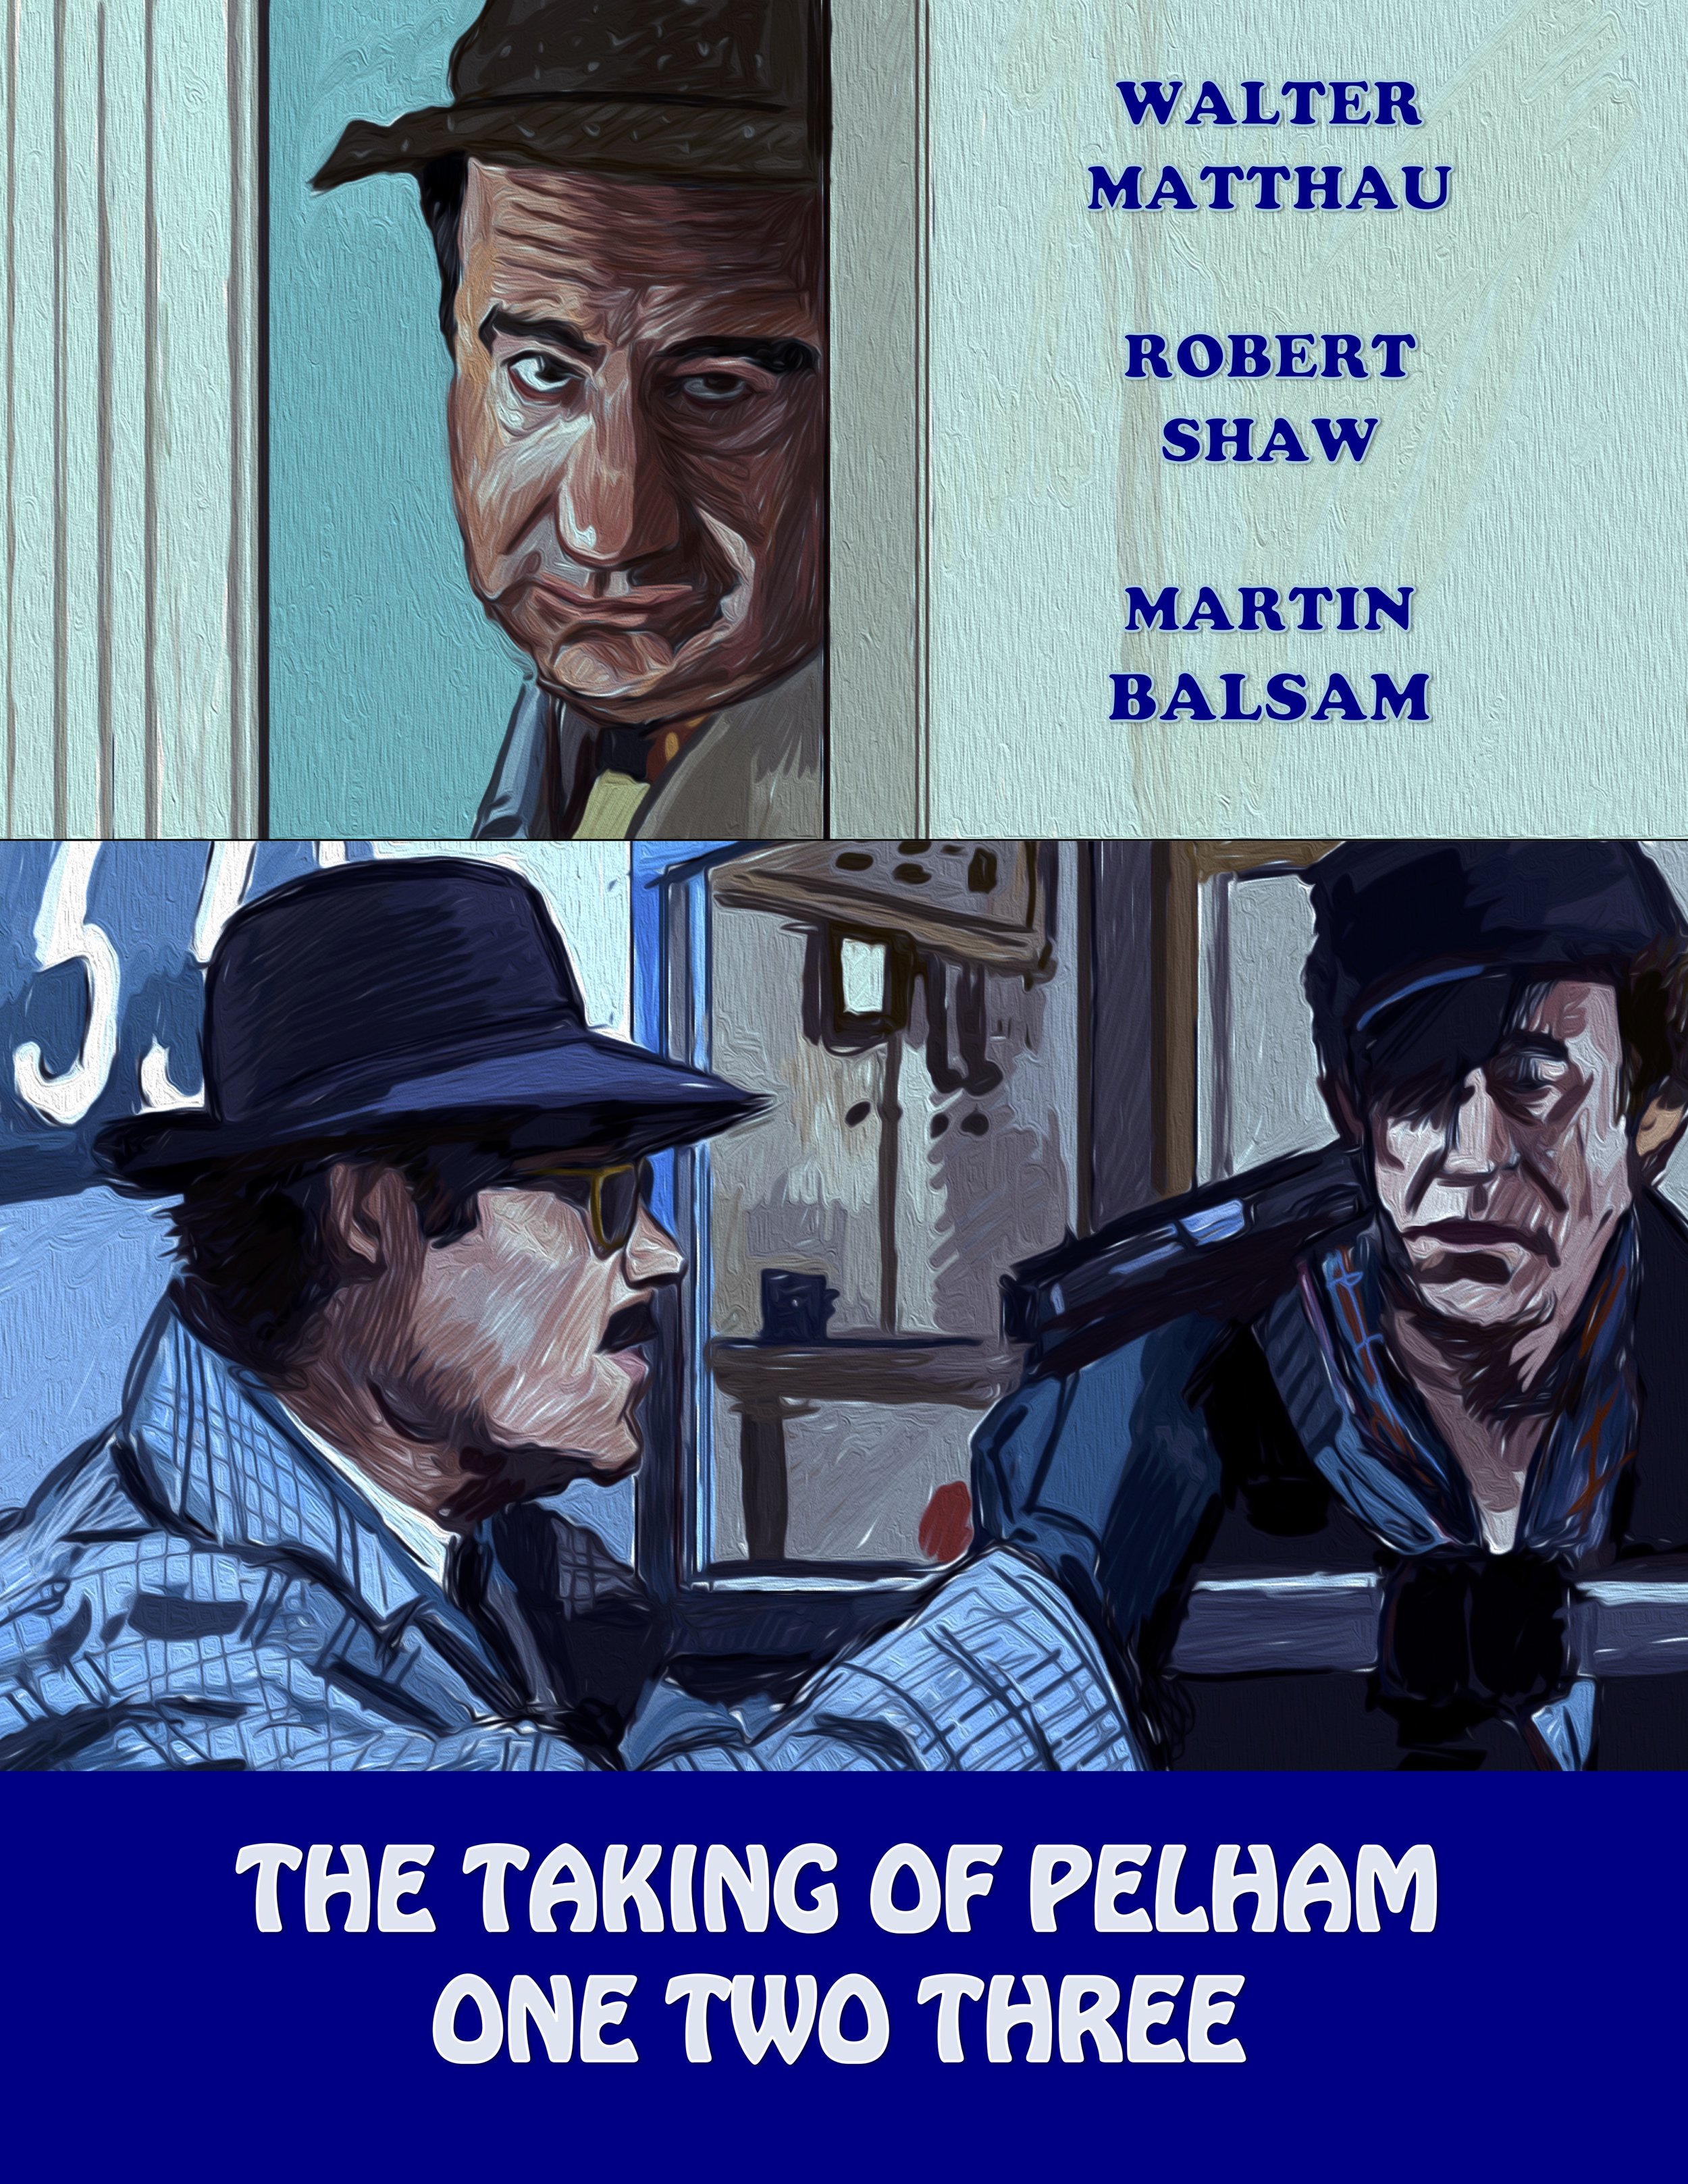 The Taking of Pelham 123 (1974)